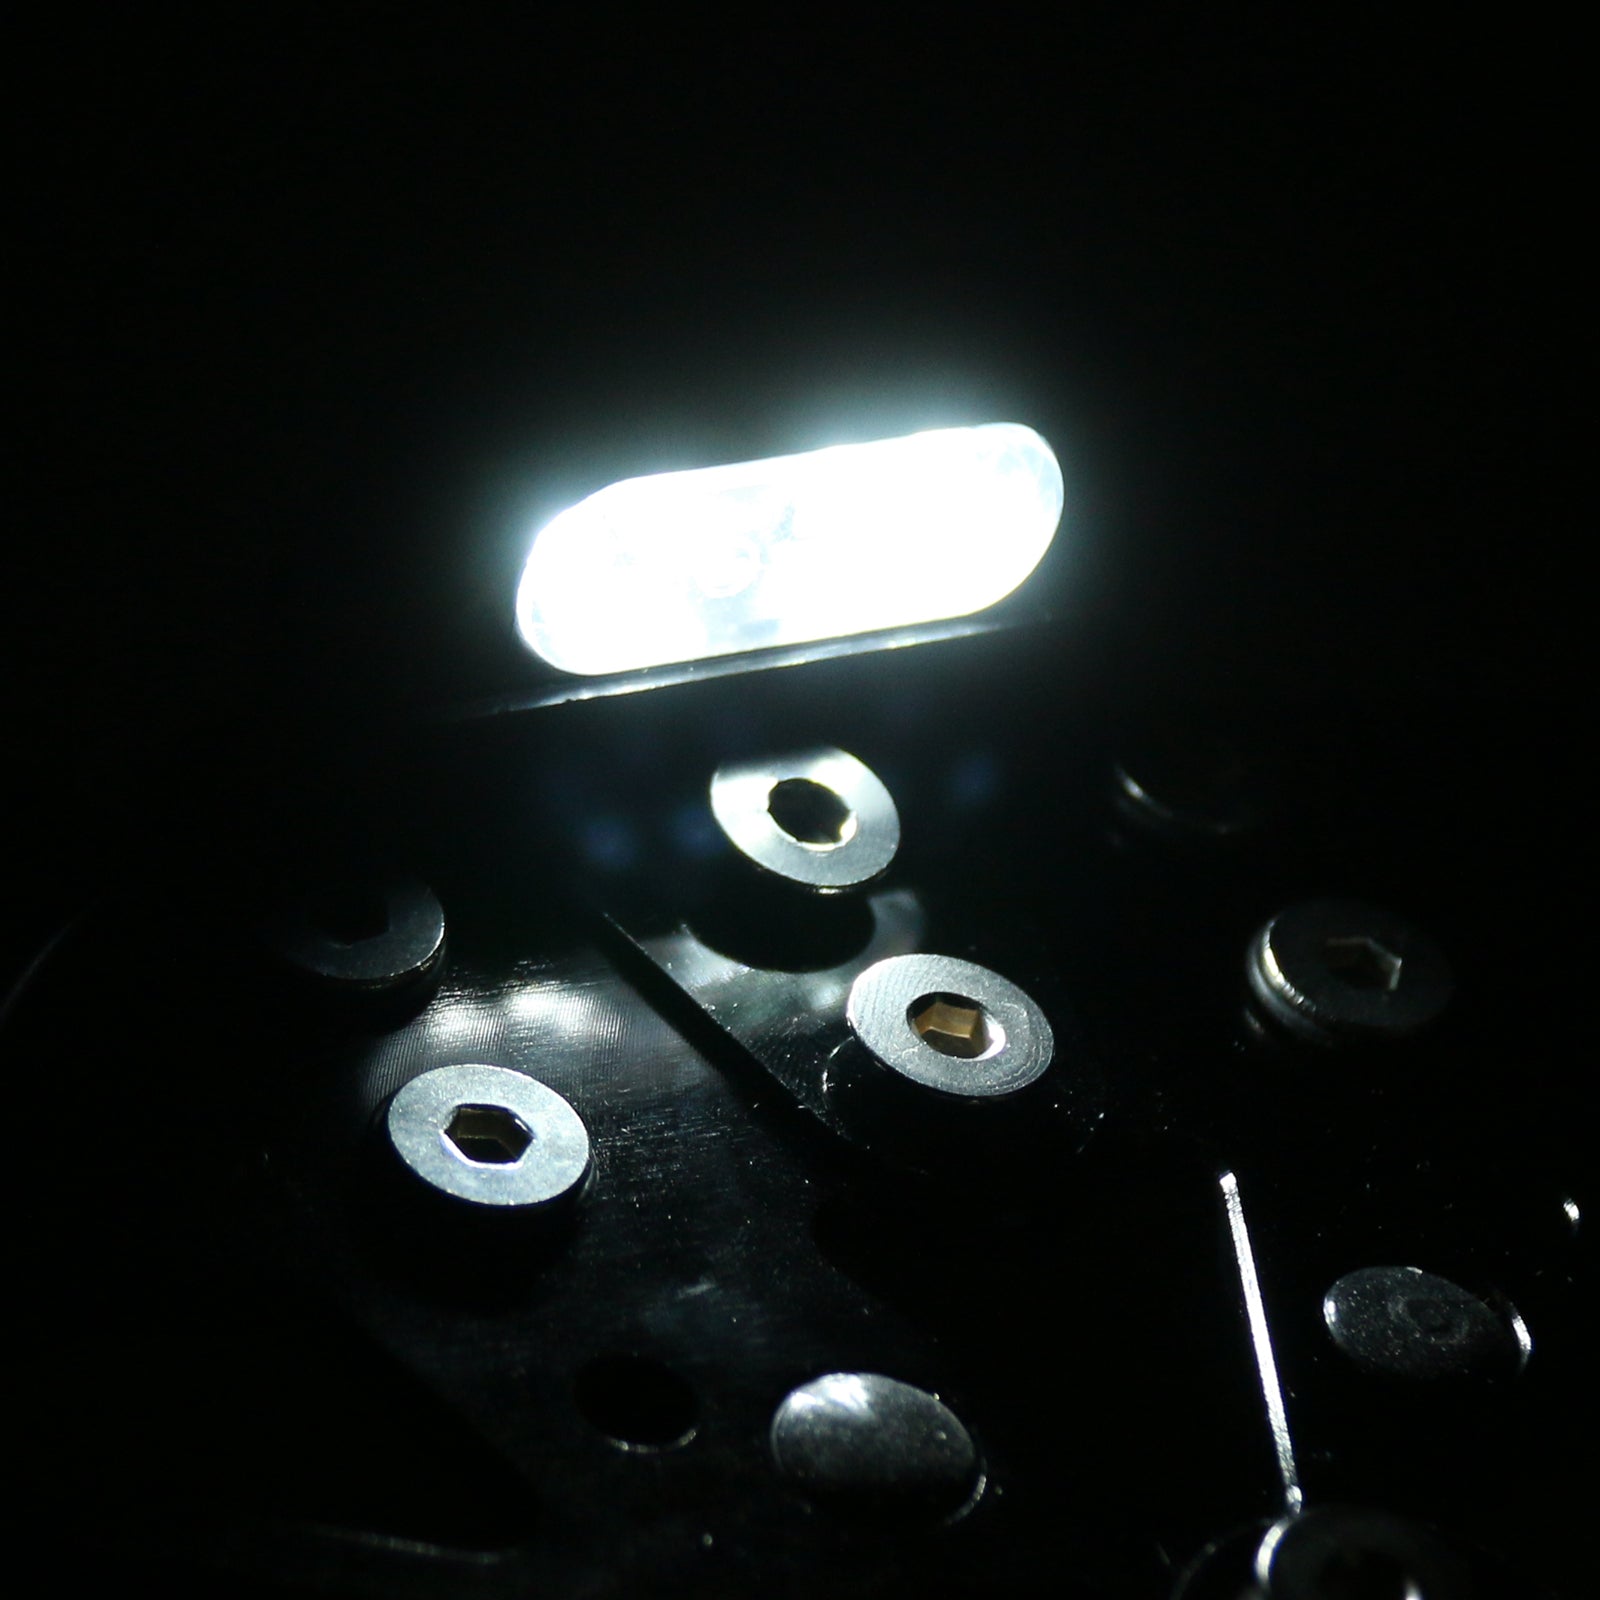 Kennzeichenhalter Halterung Kotflügel für 2012–2015 Yamaha Tmax 530 Schwarz